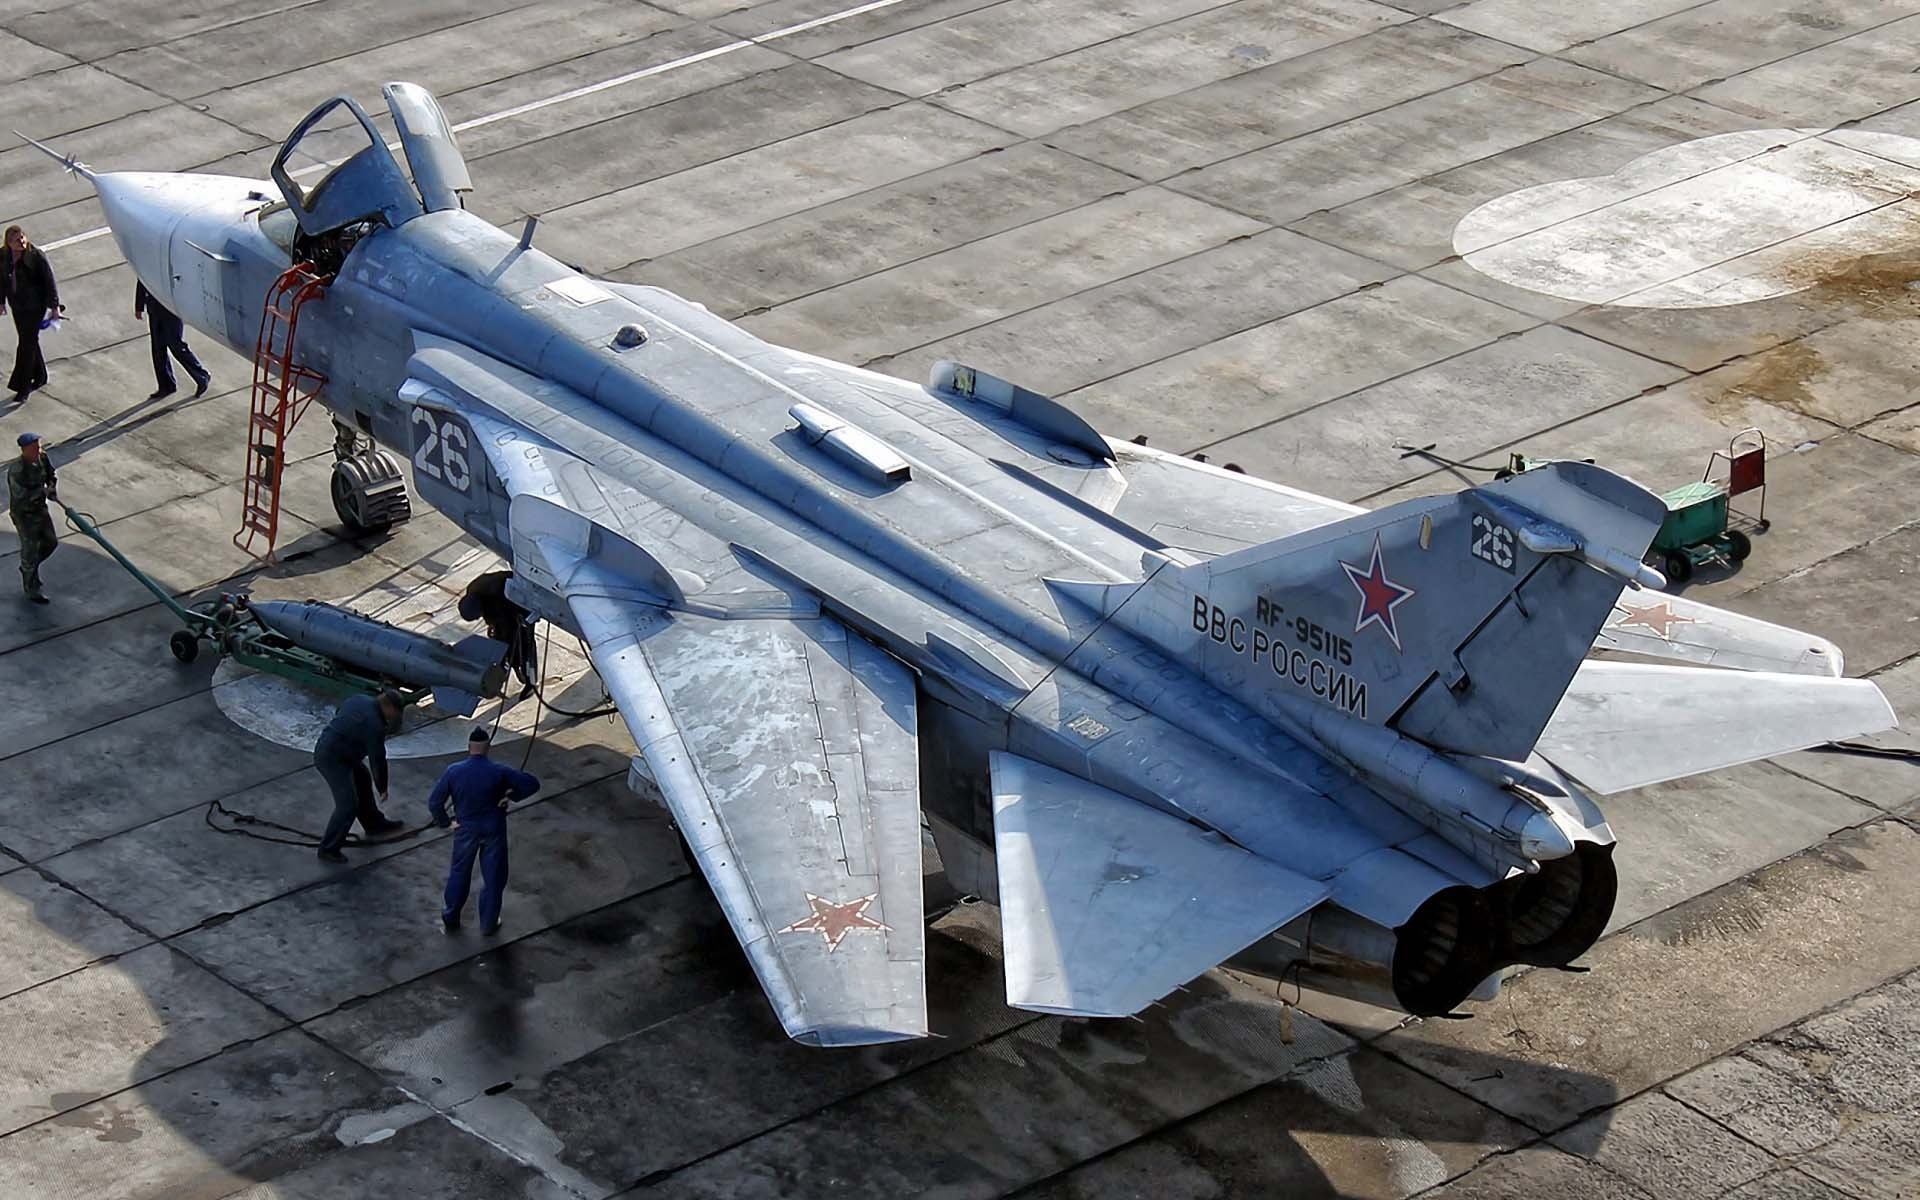 Tiêm kích Su-24 bắt đầu phục vụ Quân đội Nga từ năm 1974